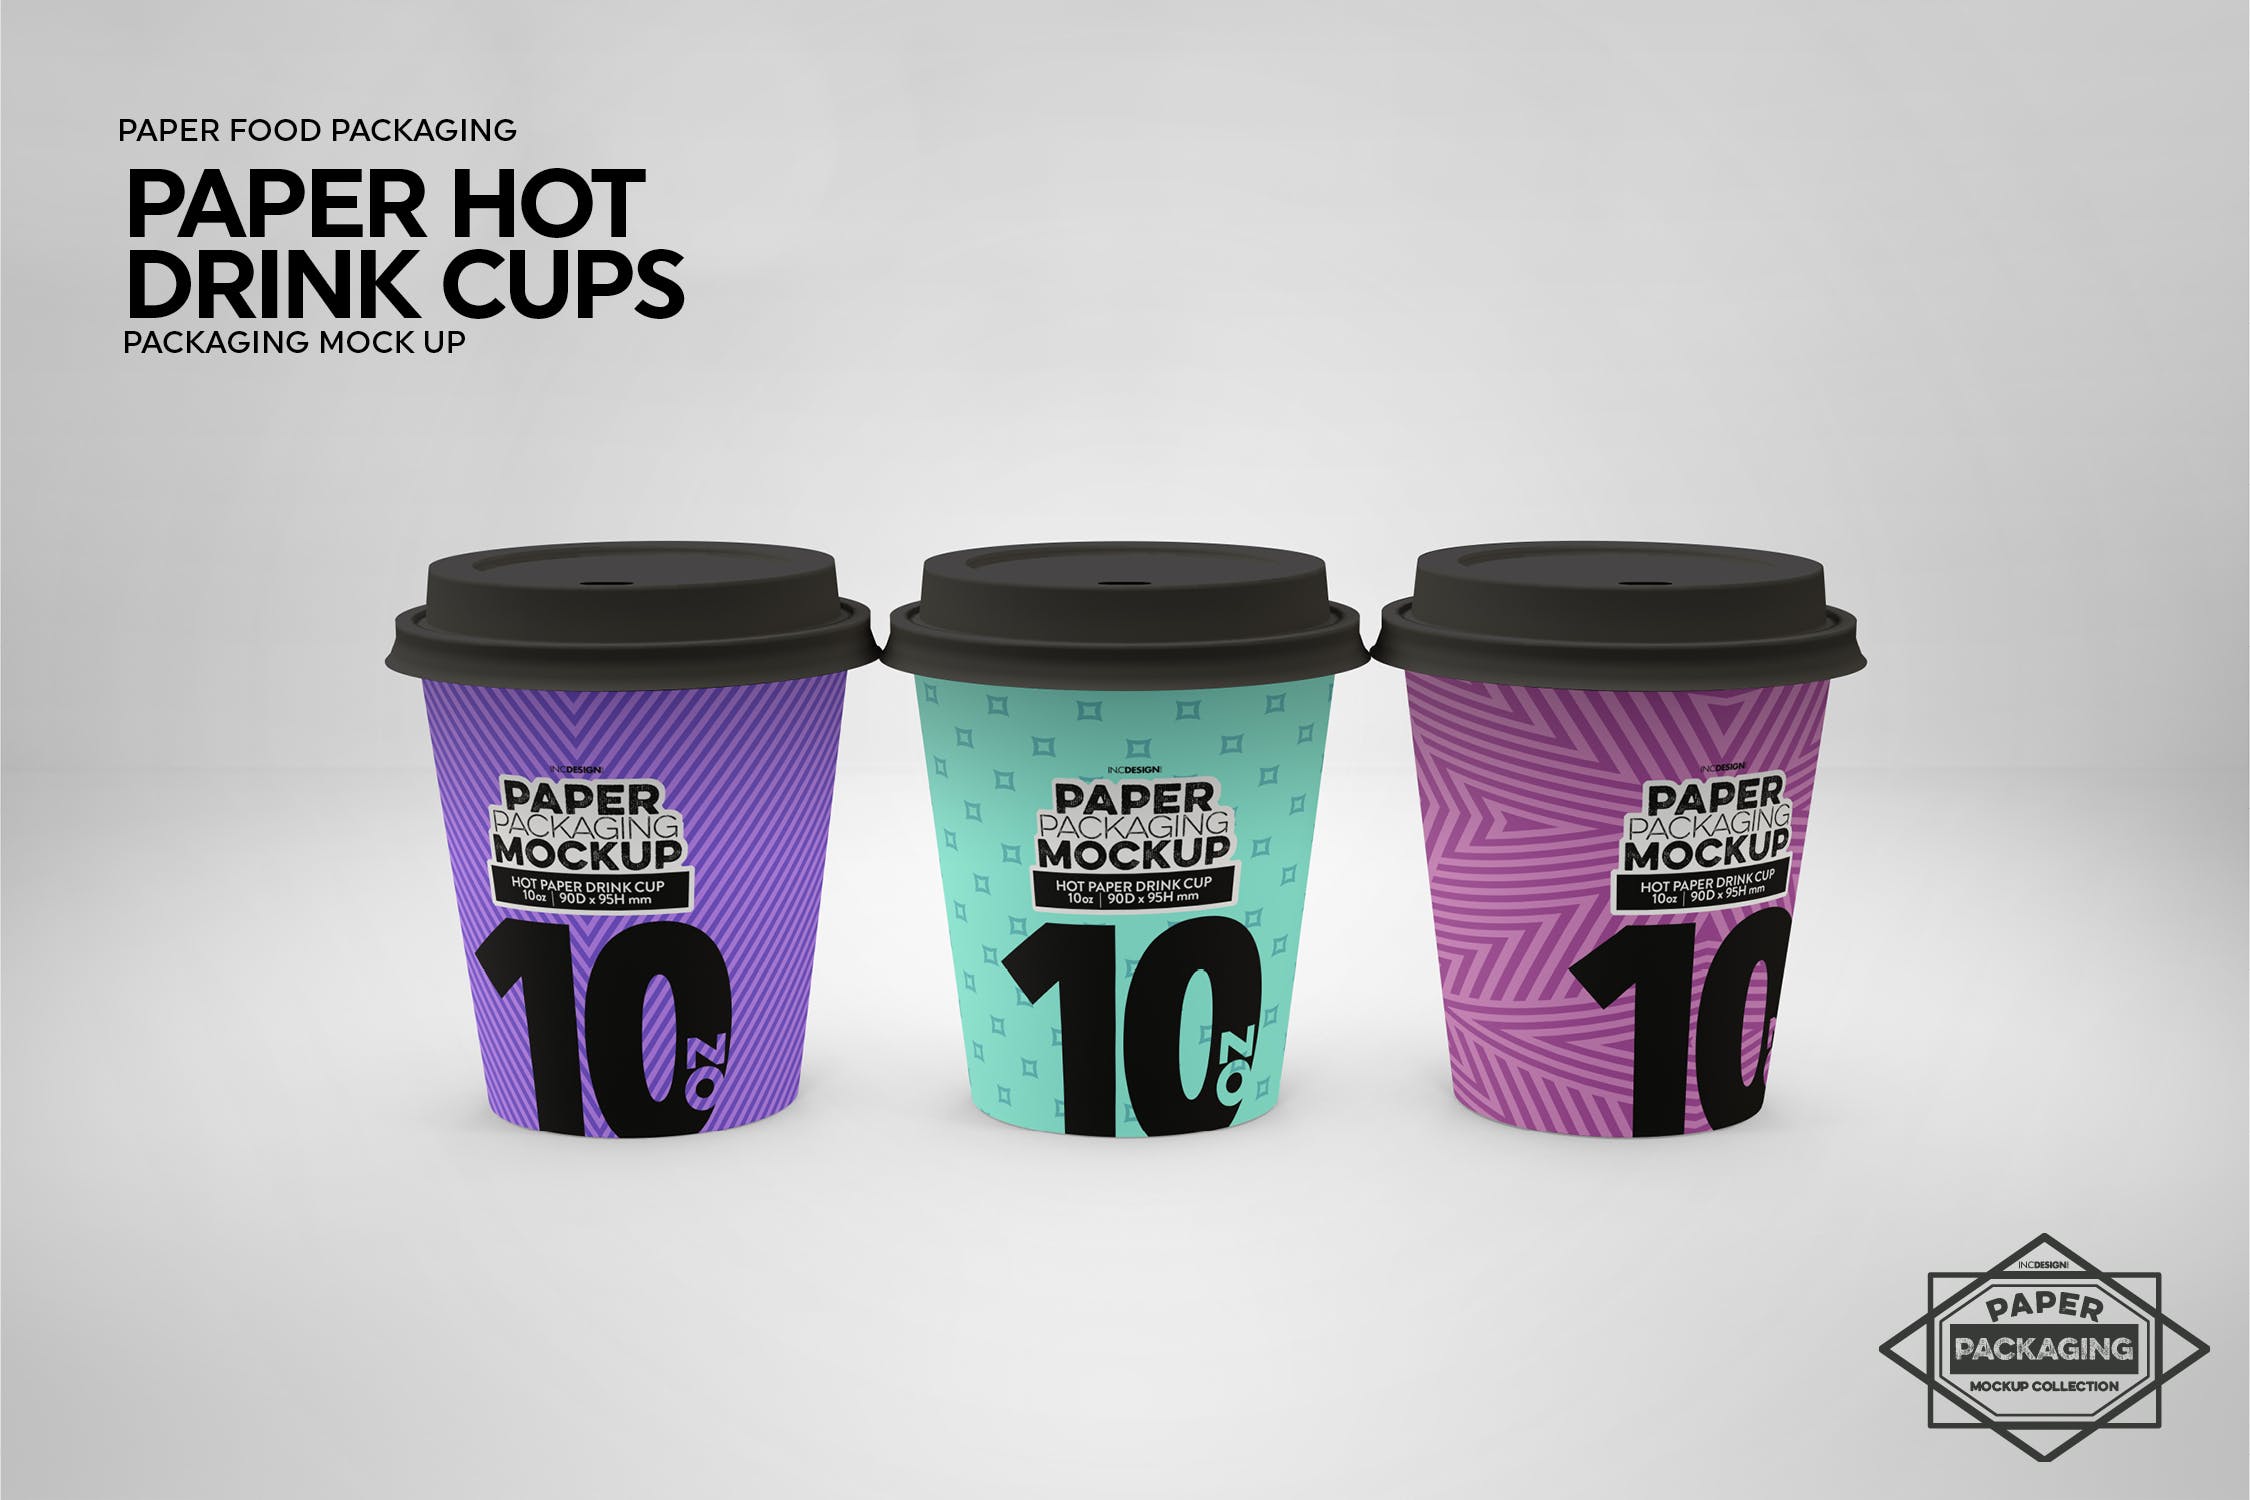 热饮一次性纸杯外观设计非凡图库精选 Paper Hot Drink Cups Packaging Mockup插图(12)